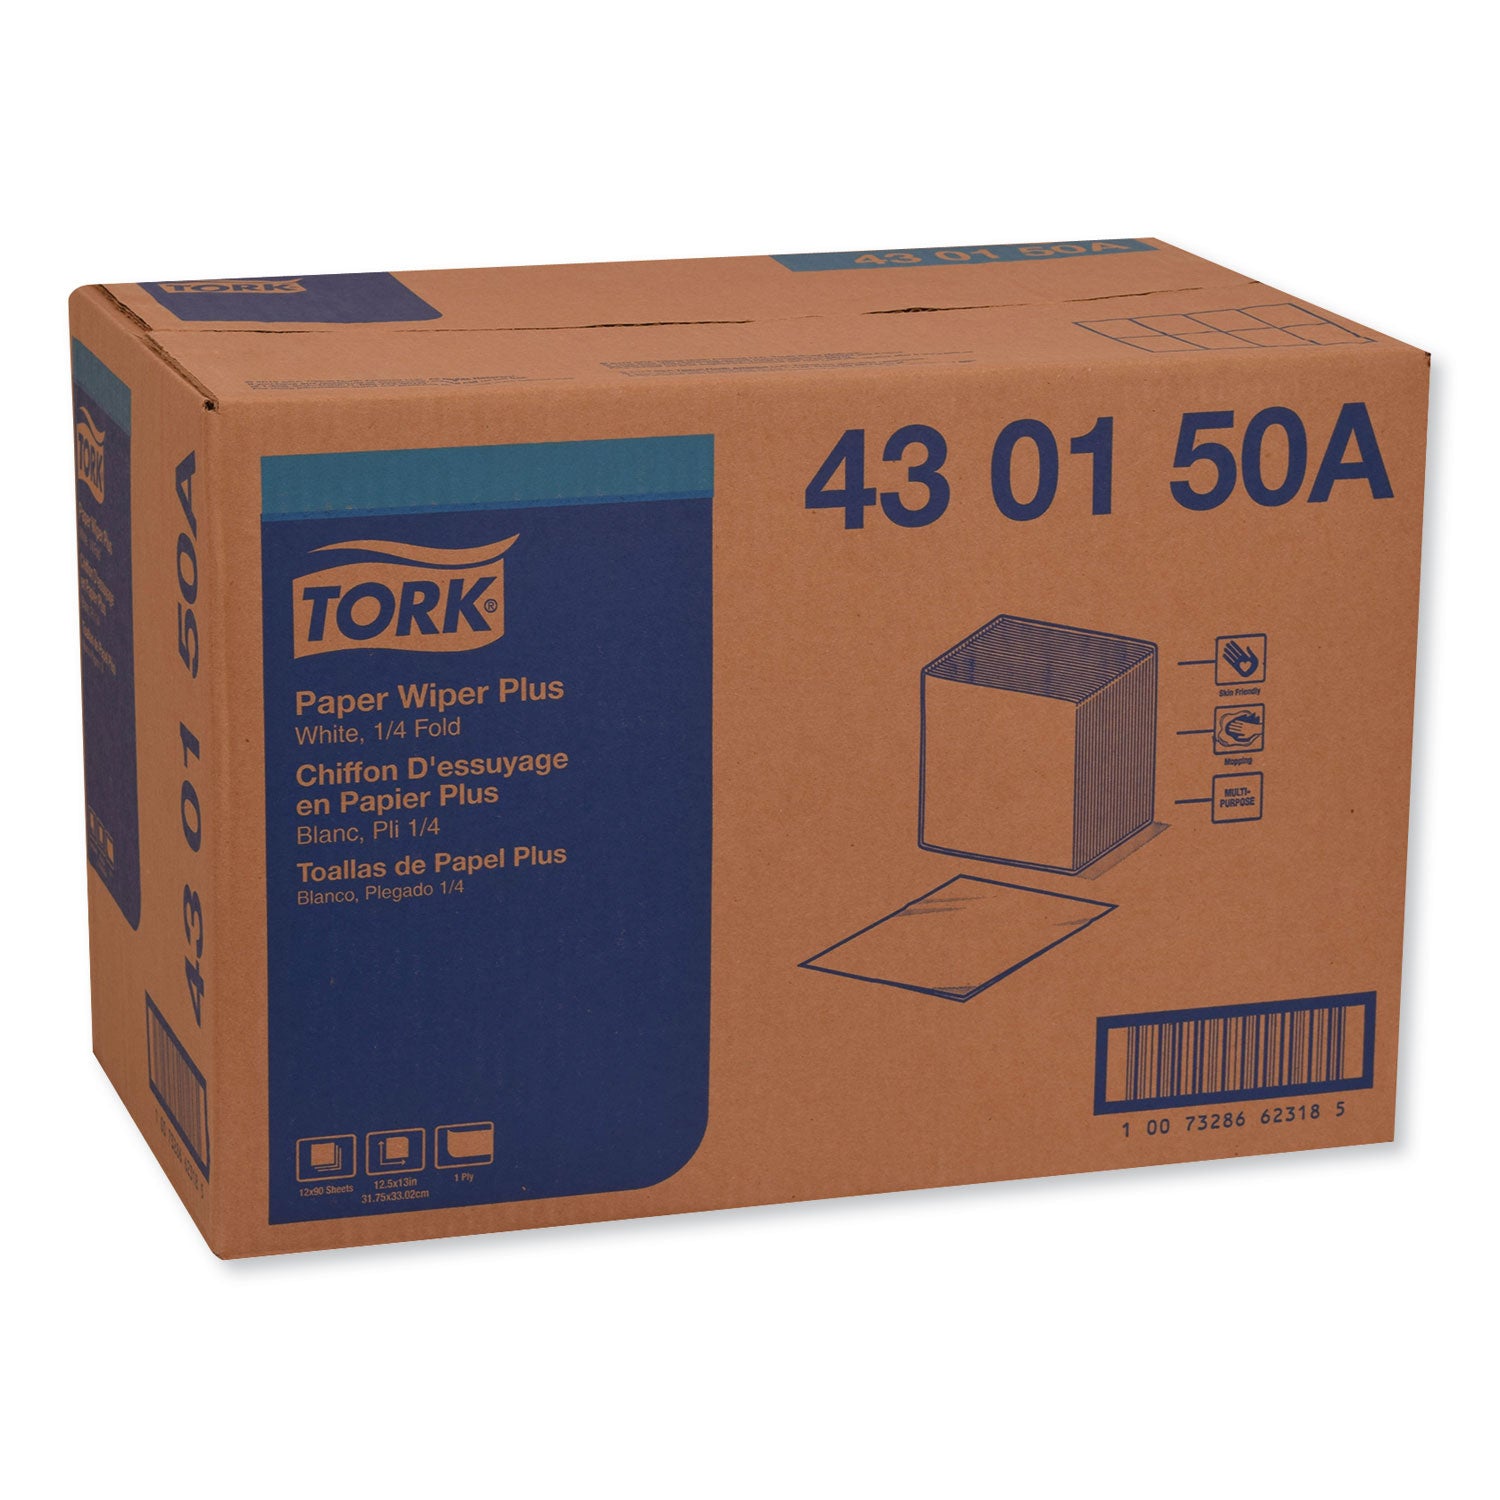 paper-wiper-plus-125-x-13-white-1-4-fold-90-pack-12-packs-carton_trk430150a - 2